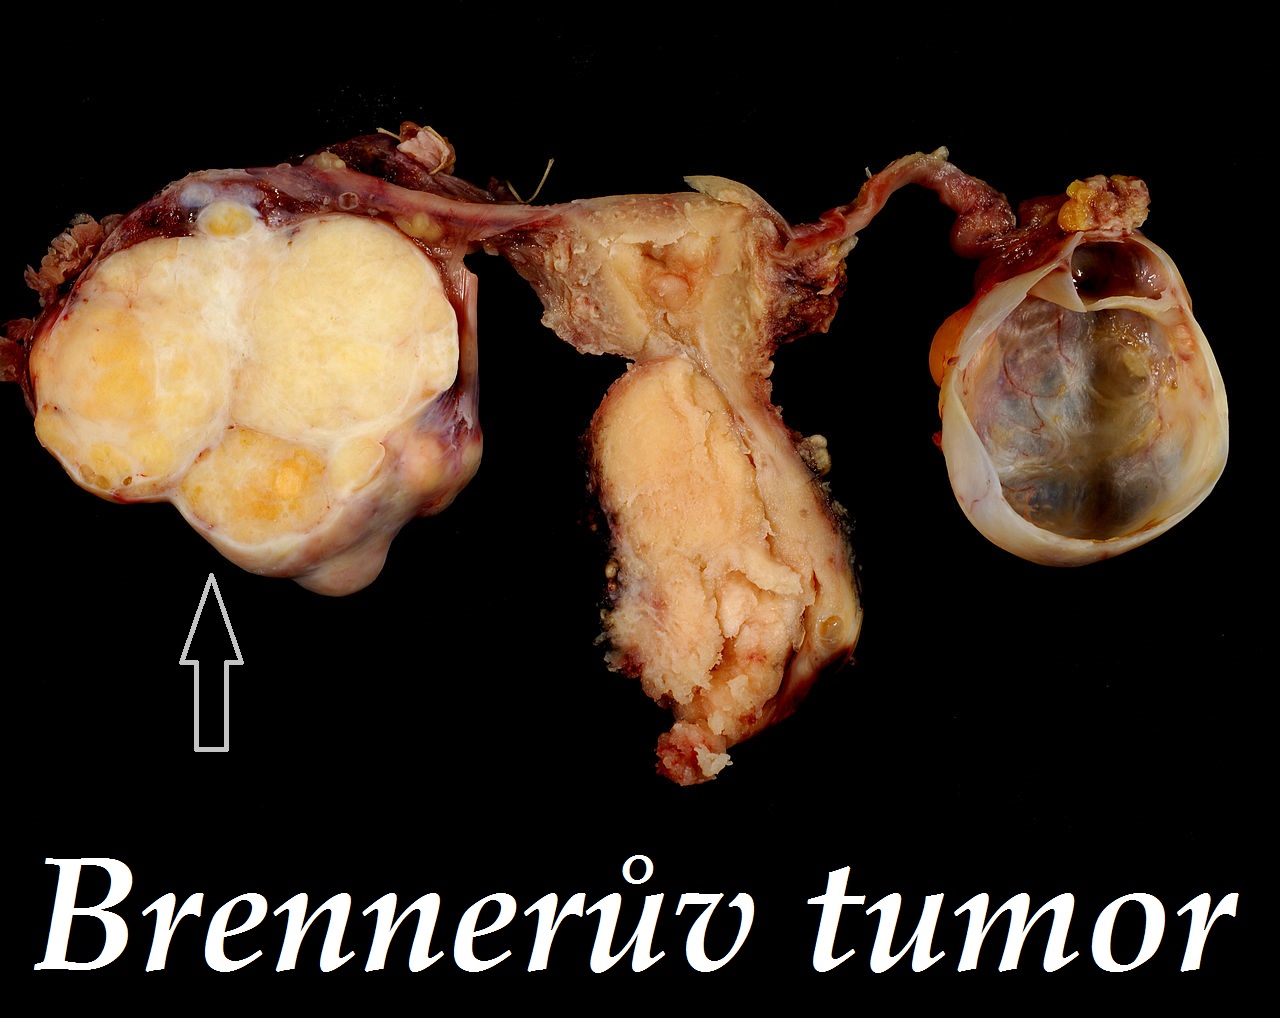 brenneruv-tumor-priznaky-projevy-symptomy